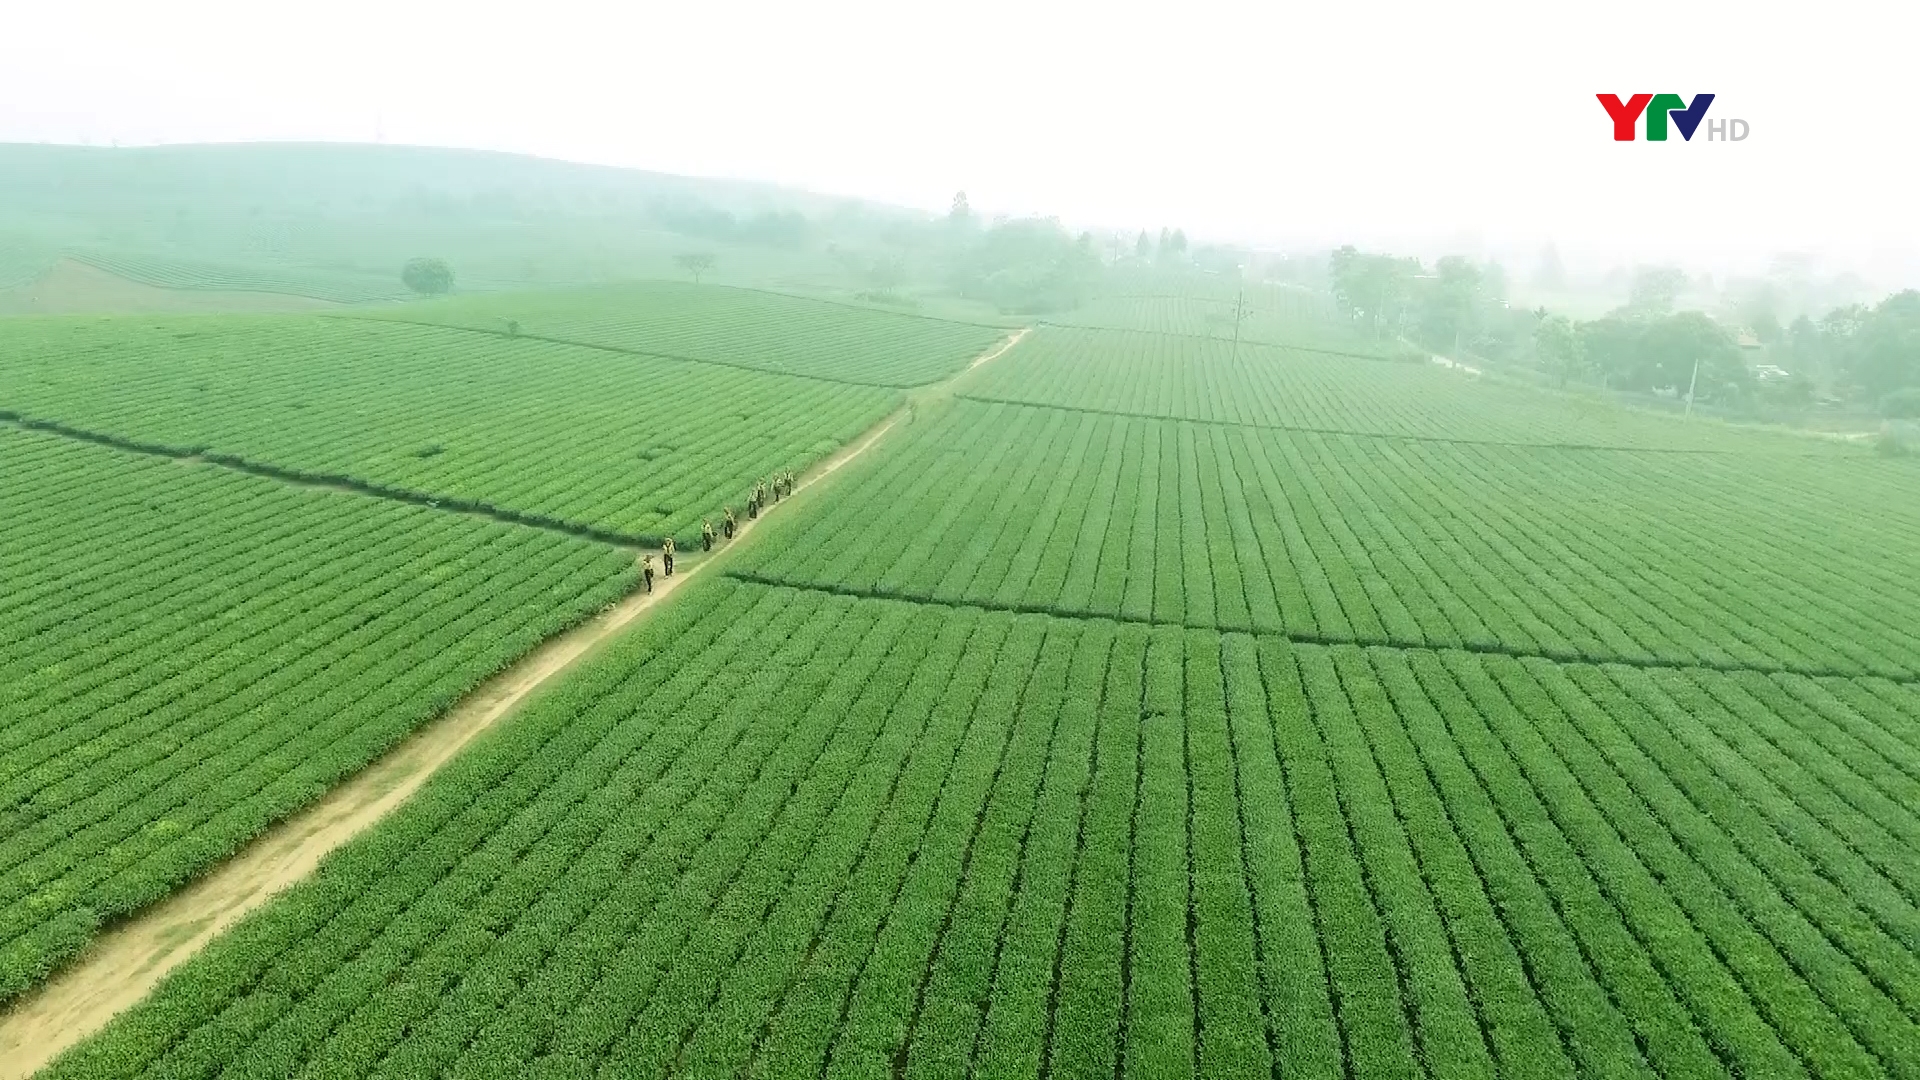 Nâng cao nhận thức cộng đồng về hàng hoá & dịch vụ nông nghiệp Việt Nam  đến người tiêu dùng trong tỉnh